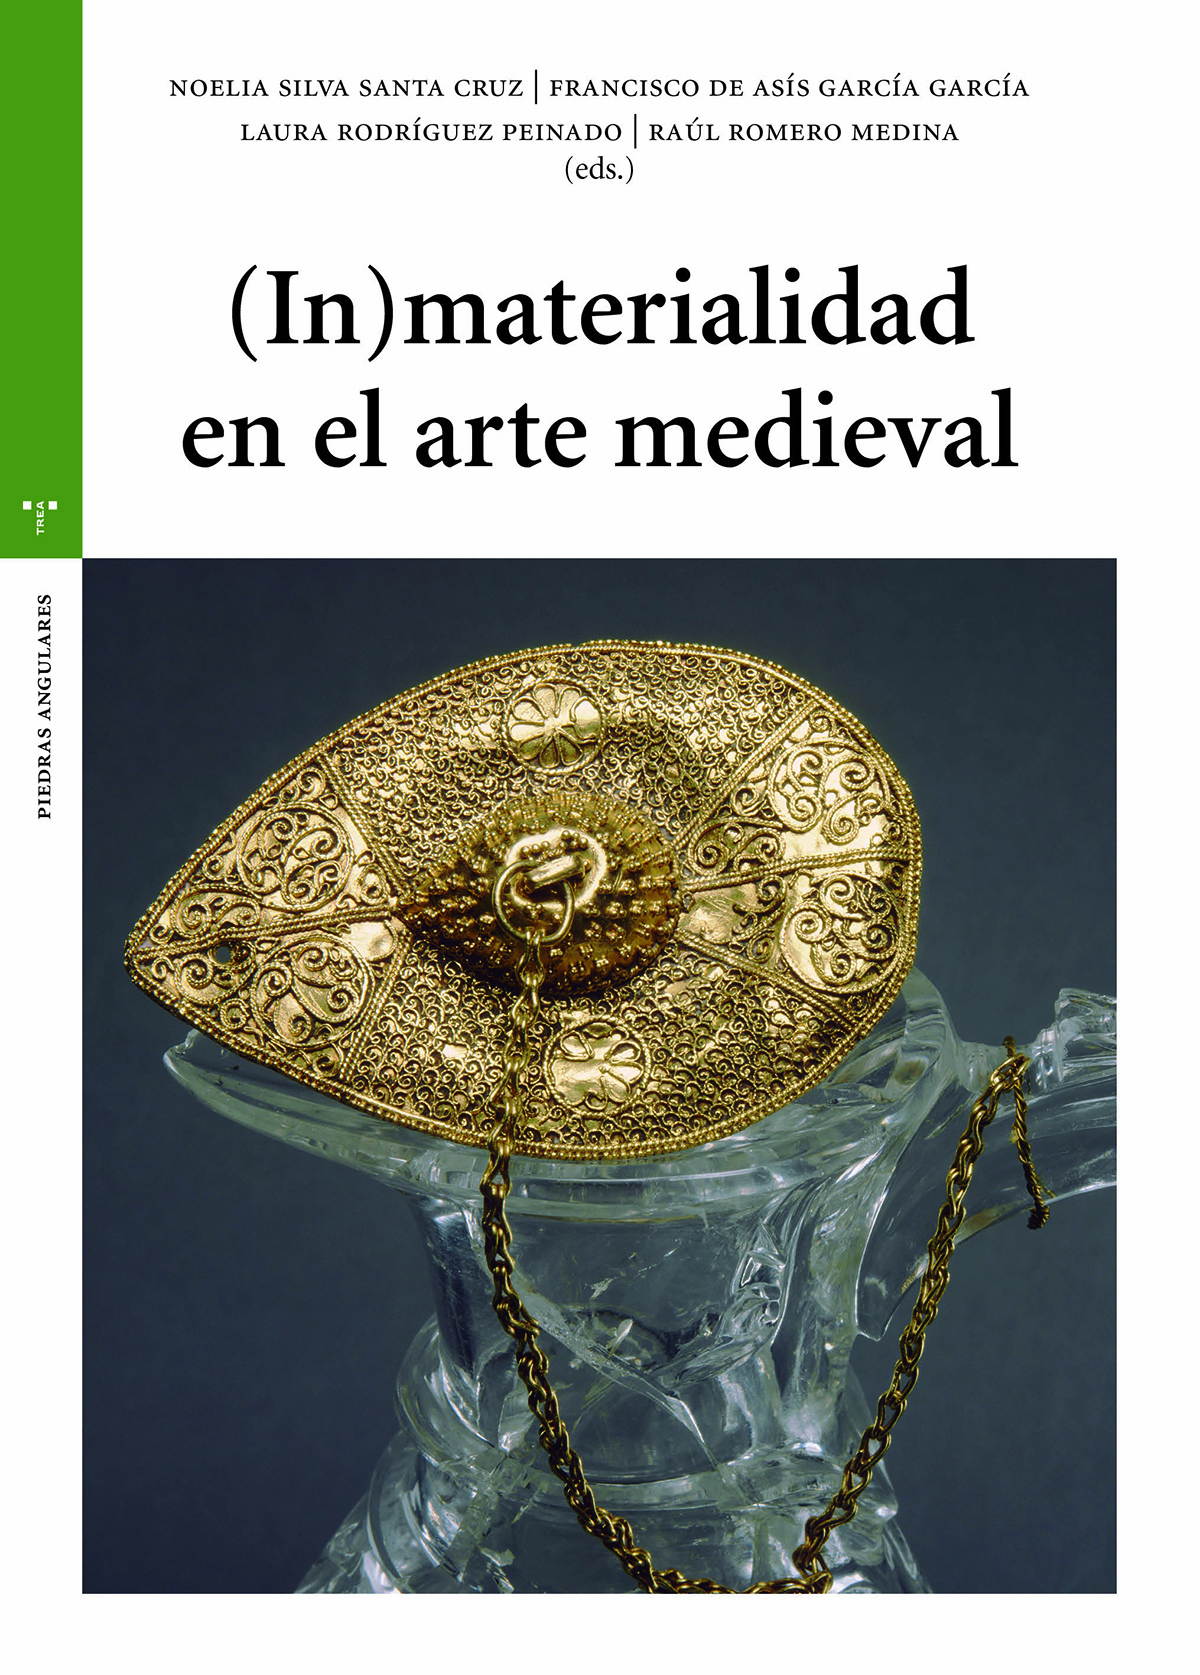 (In)materialidad en el arte medieval